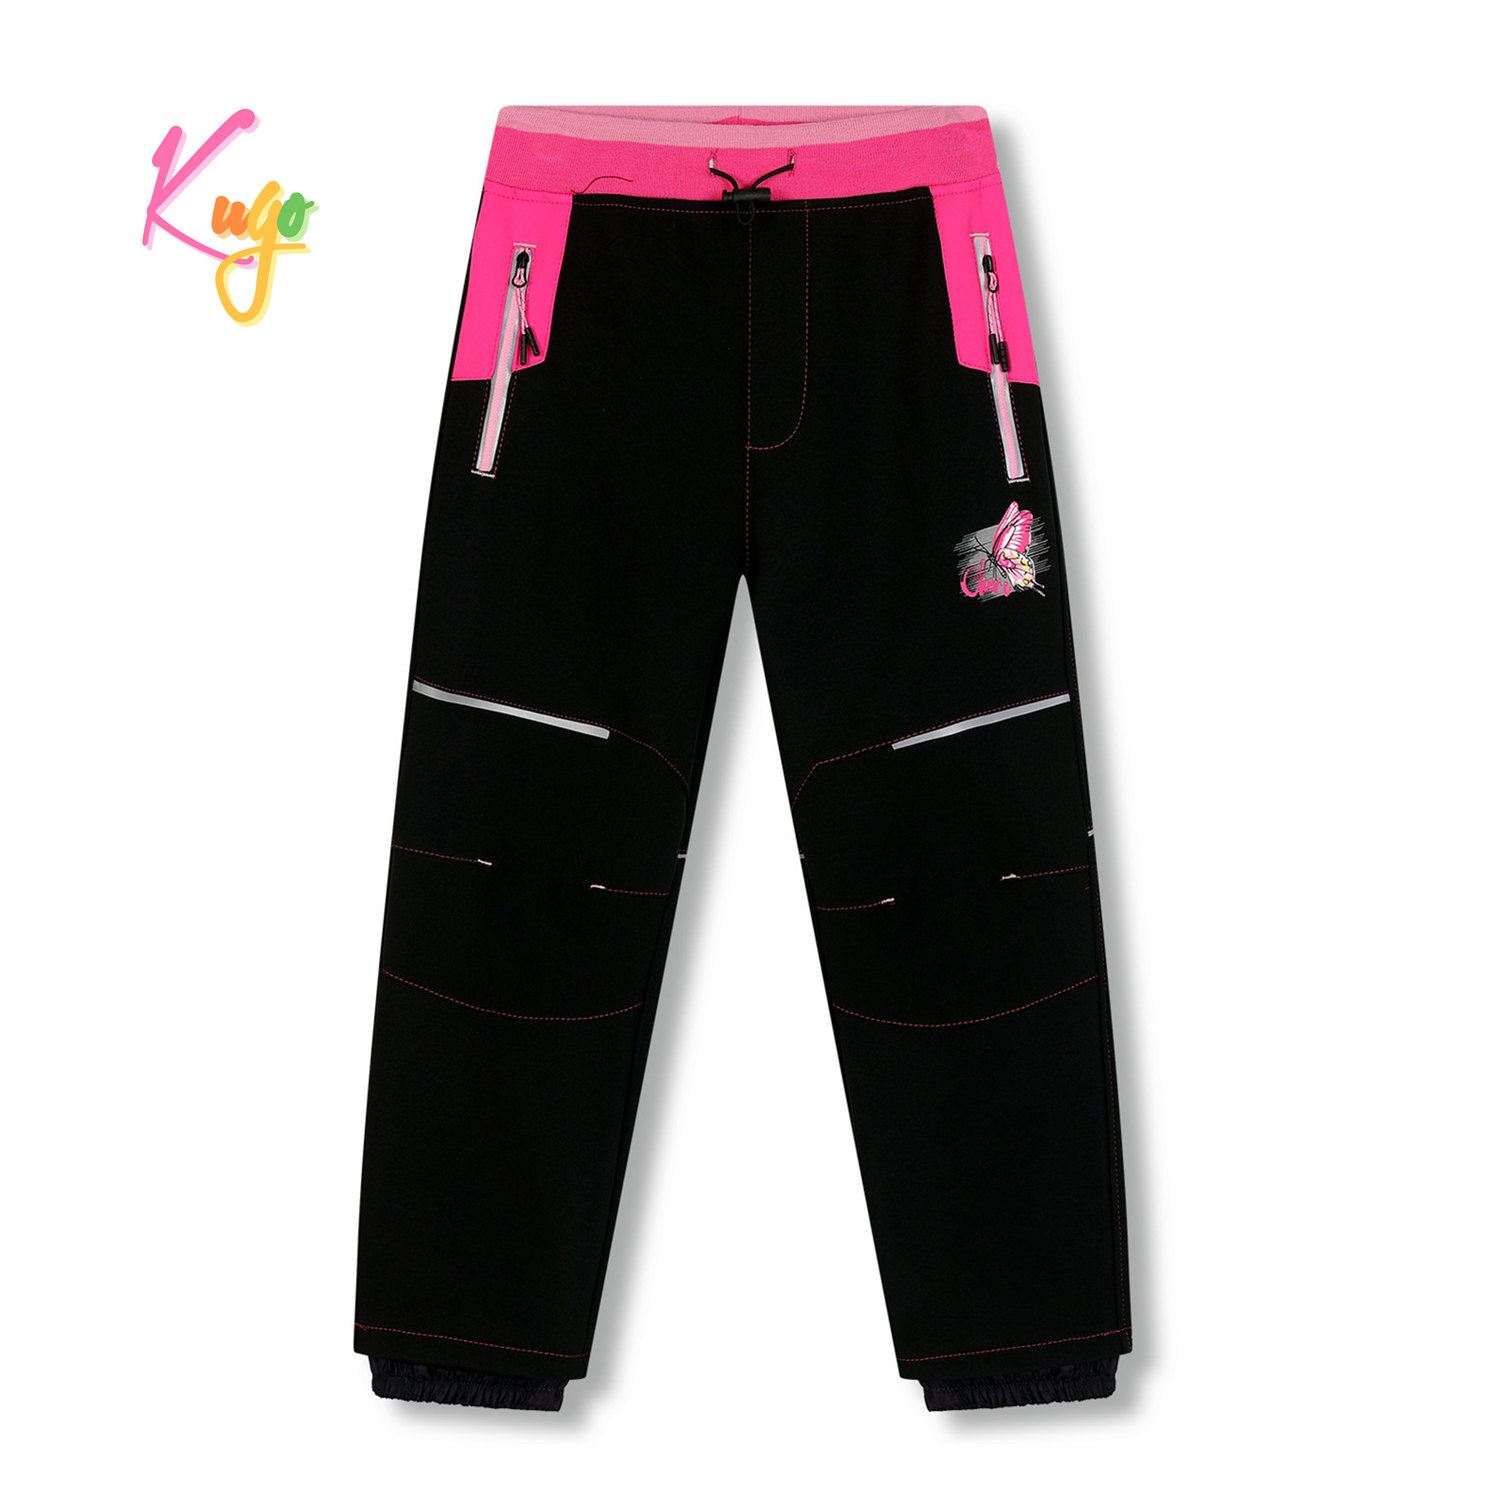 Dívčí softshellové kalhoty, zateplené - KUGO HK5612, černá / růžový pas Barva: Černá, Velikost: 122